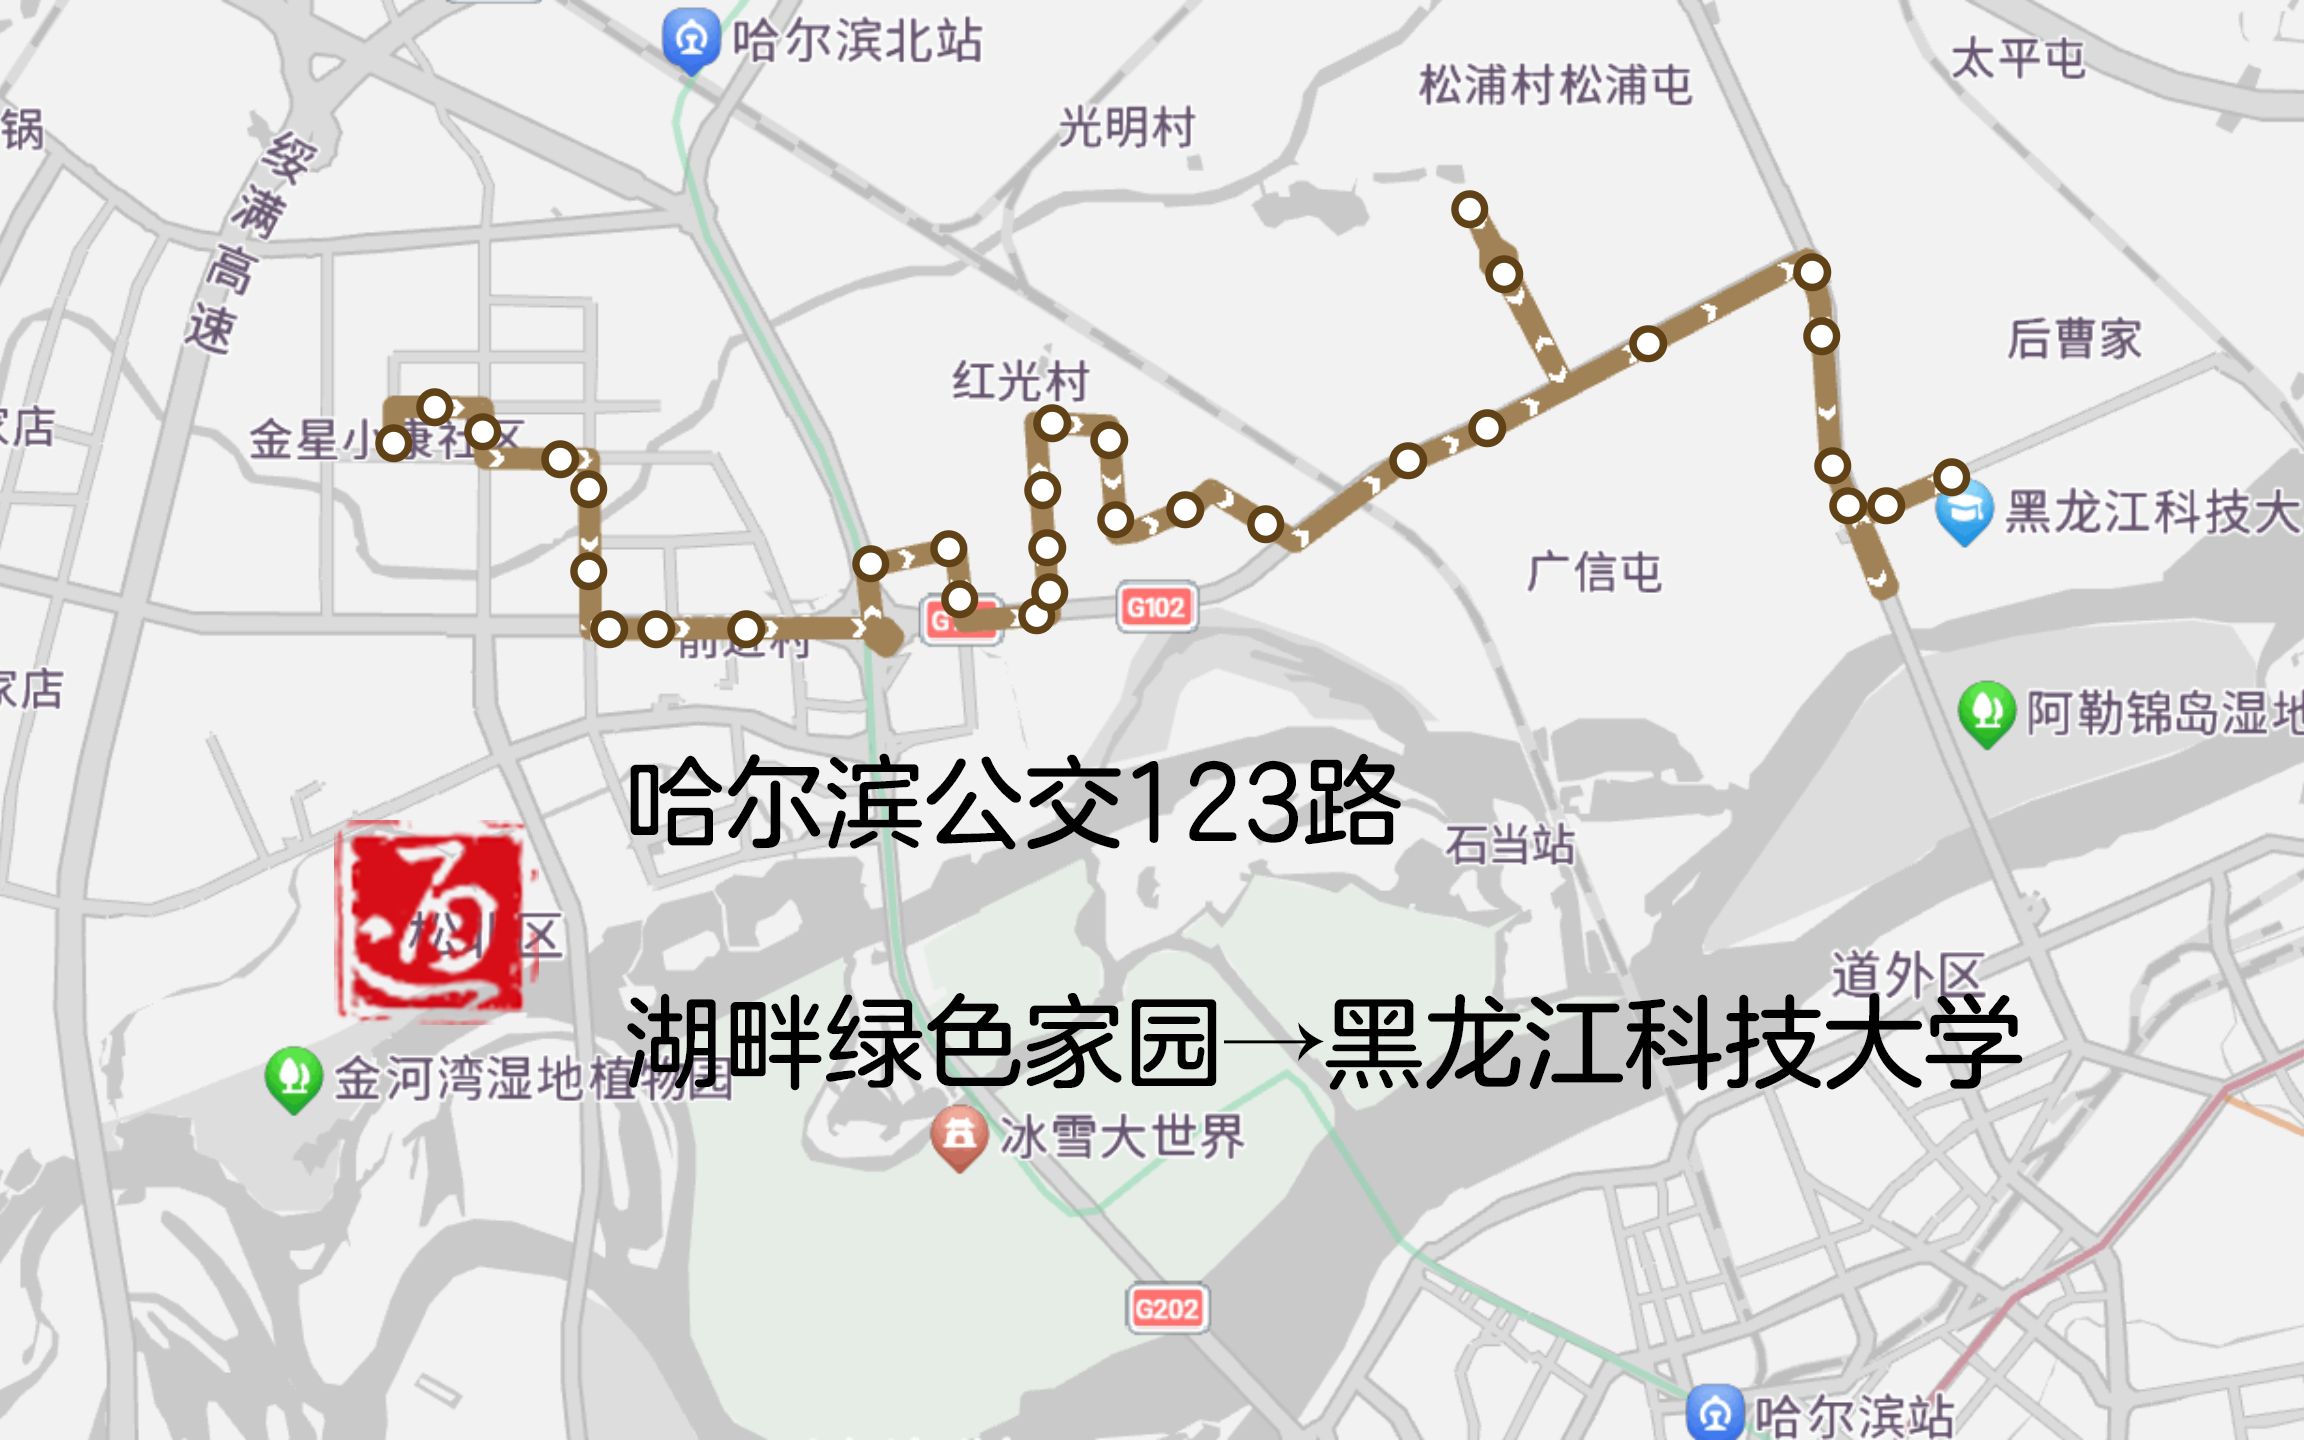 123公交线路图图片